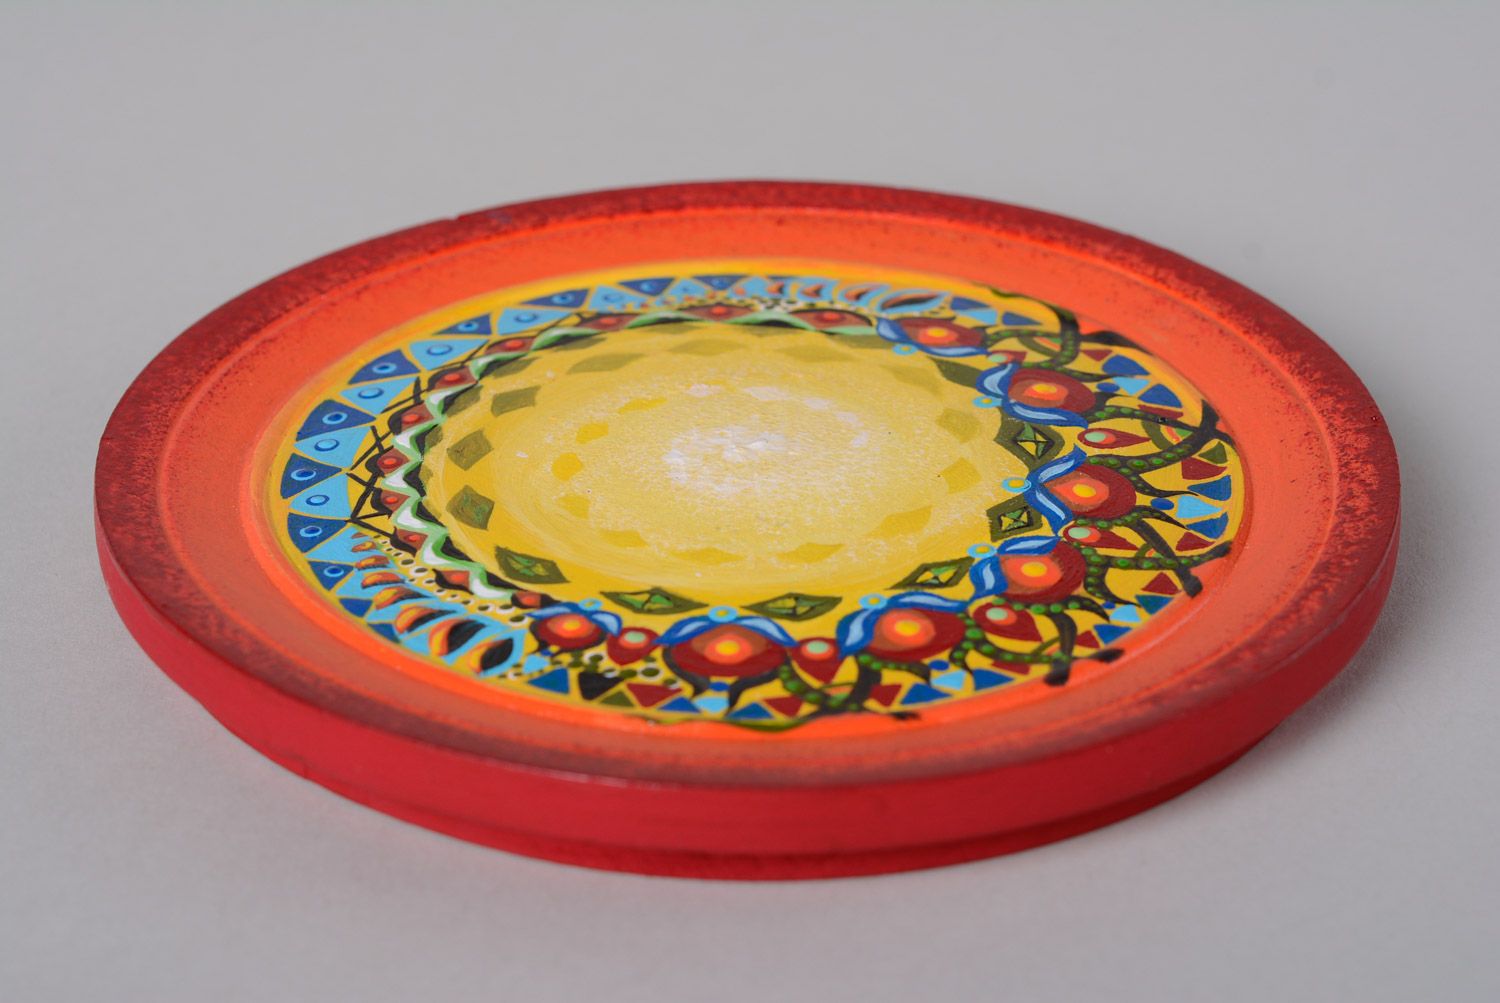 Petite assiette en bois peinte de couleurs vives faite main décorative photo 5